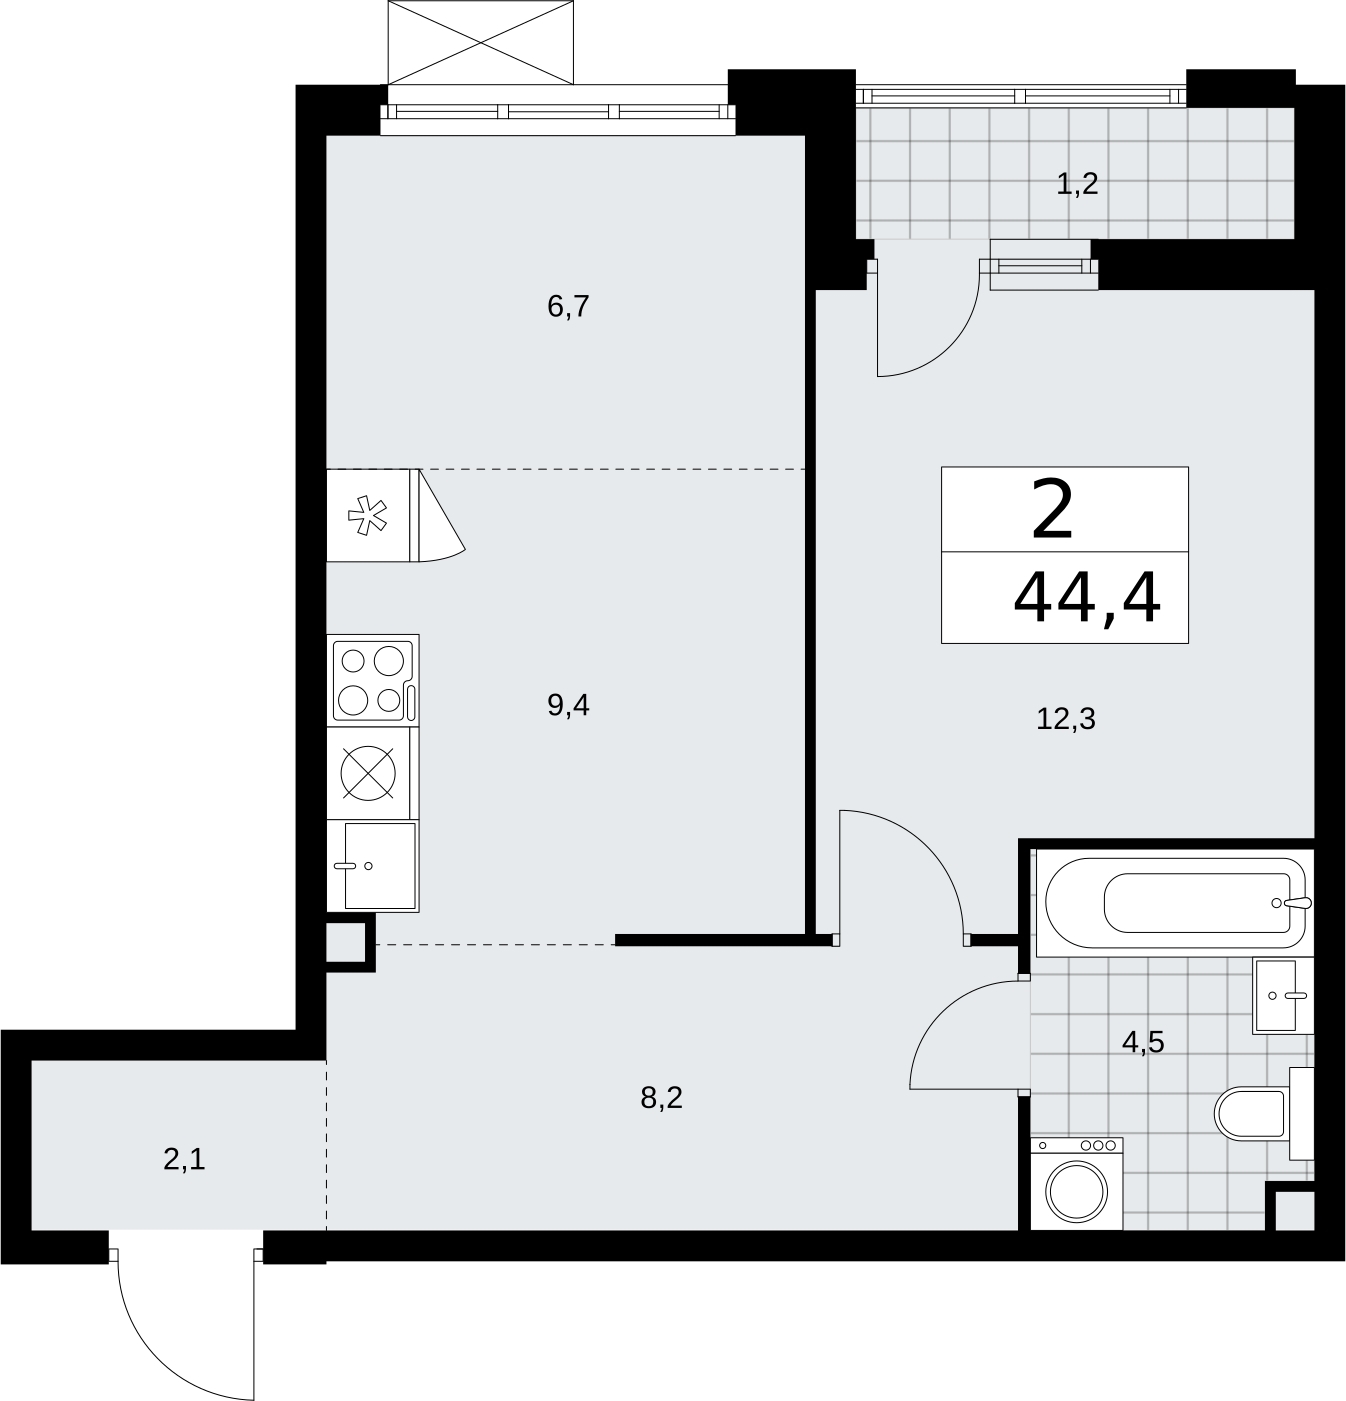 Продается 2-комн. квартира с отделкой в новом жилом комплексе, недалеко от метро